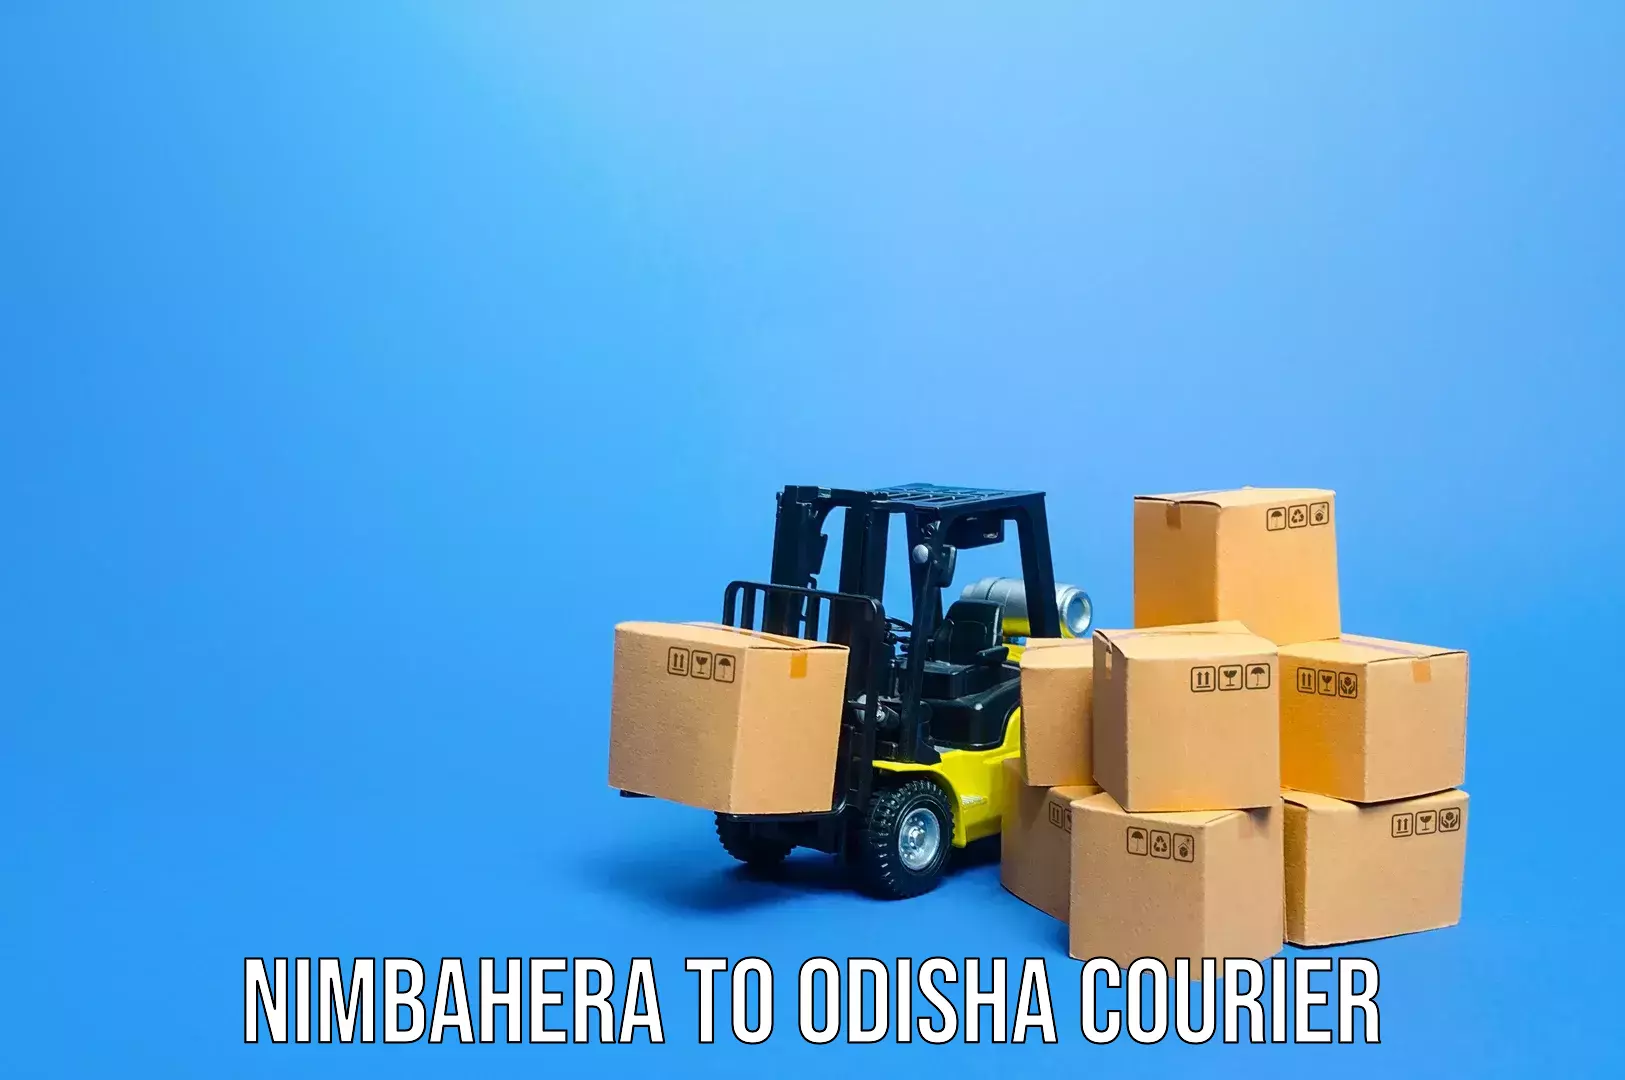 Luggage delivery system Nimbahera to Odisha